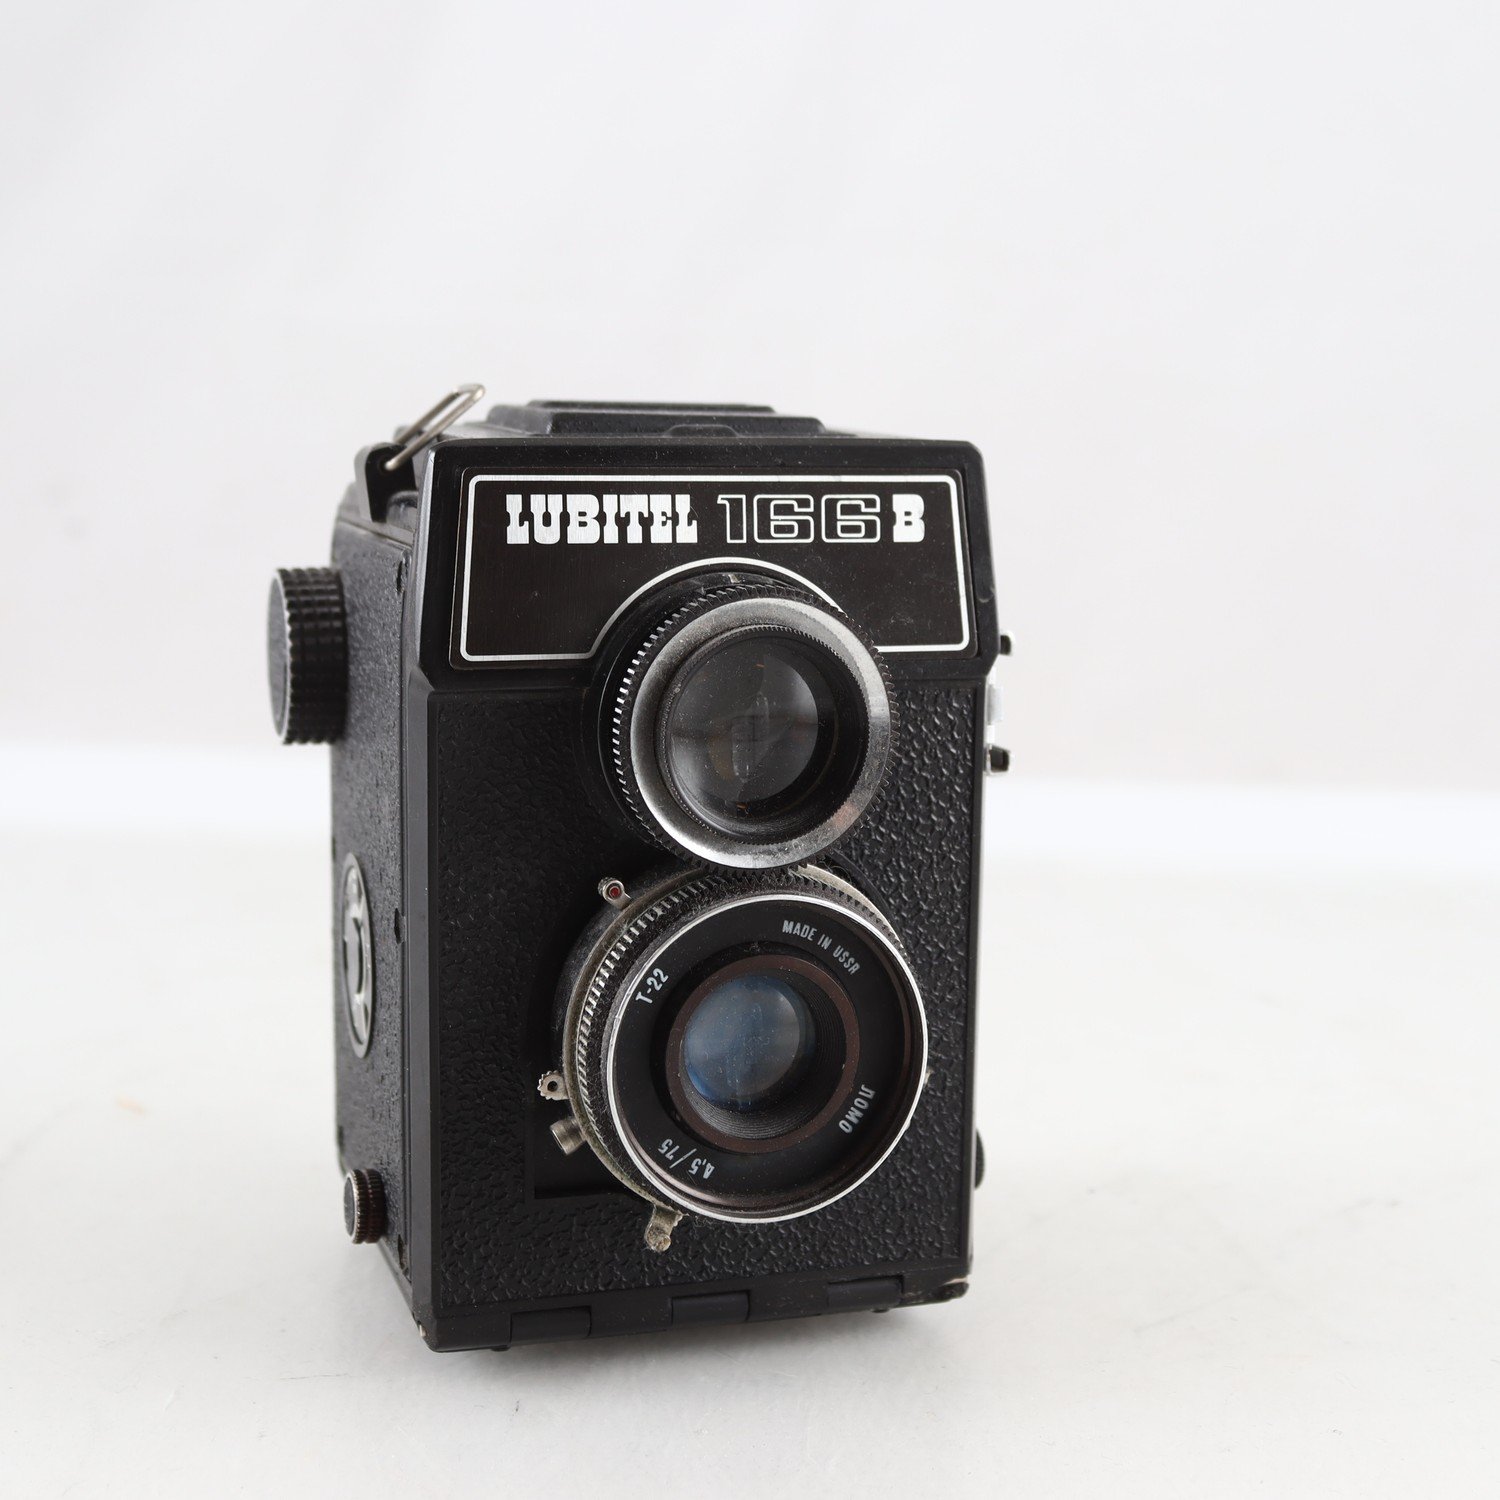 Kamera, Lomo Lubitel 166B